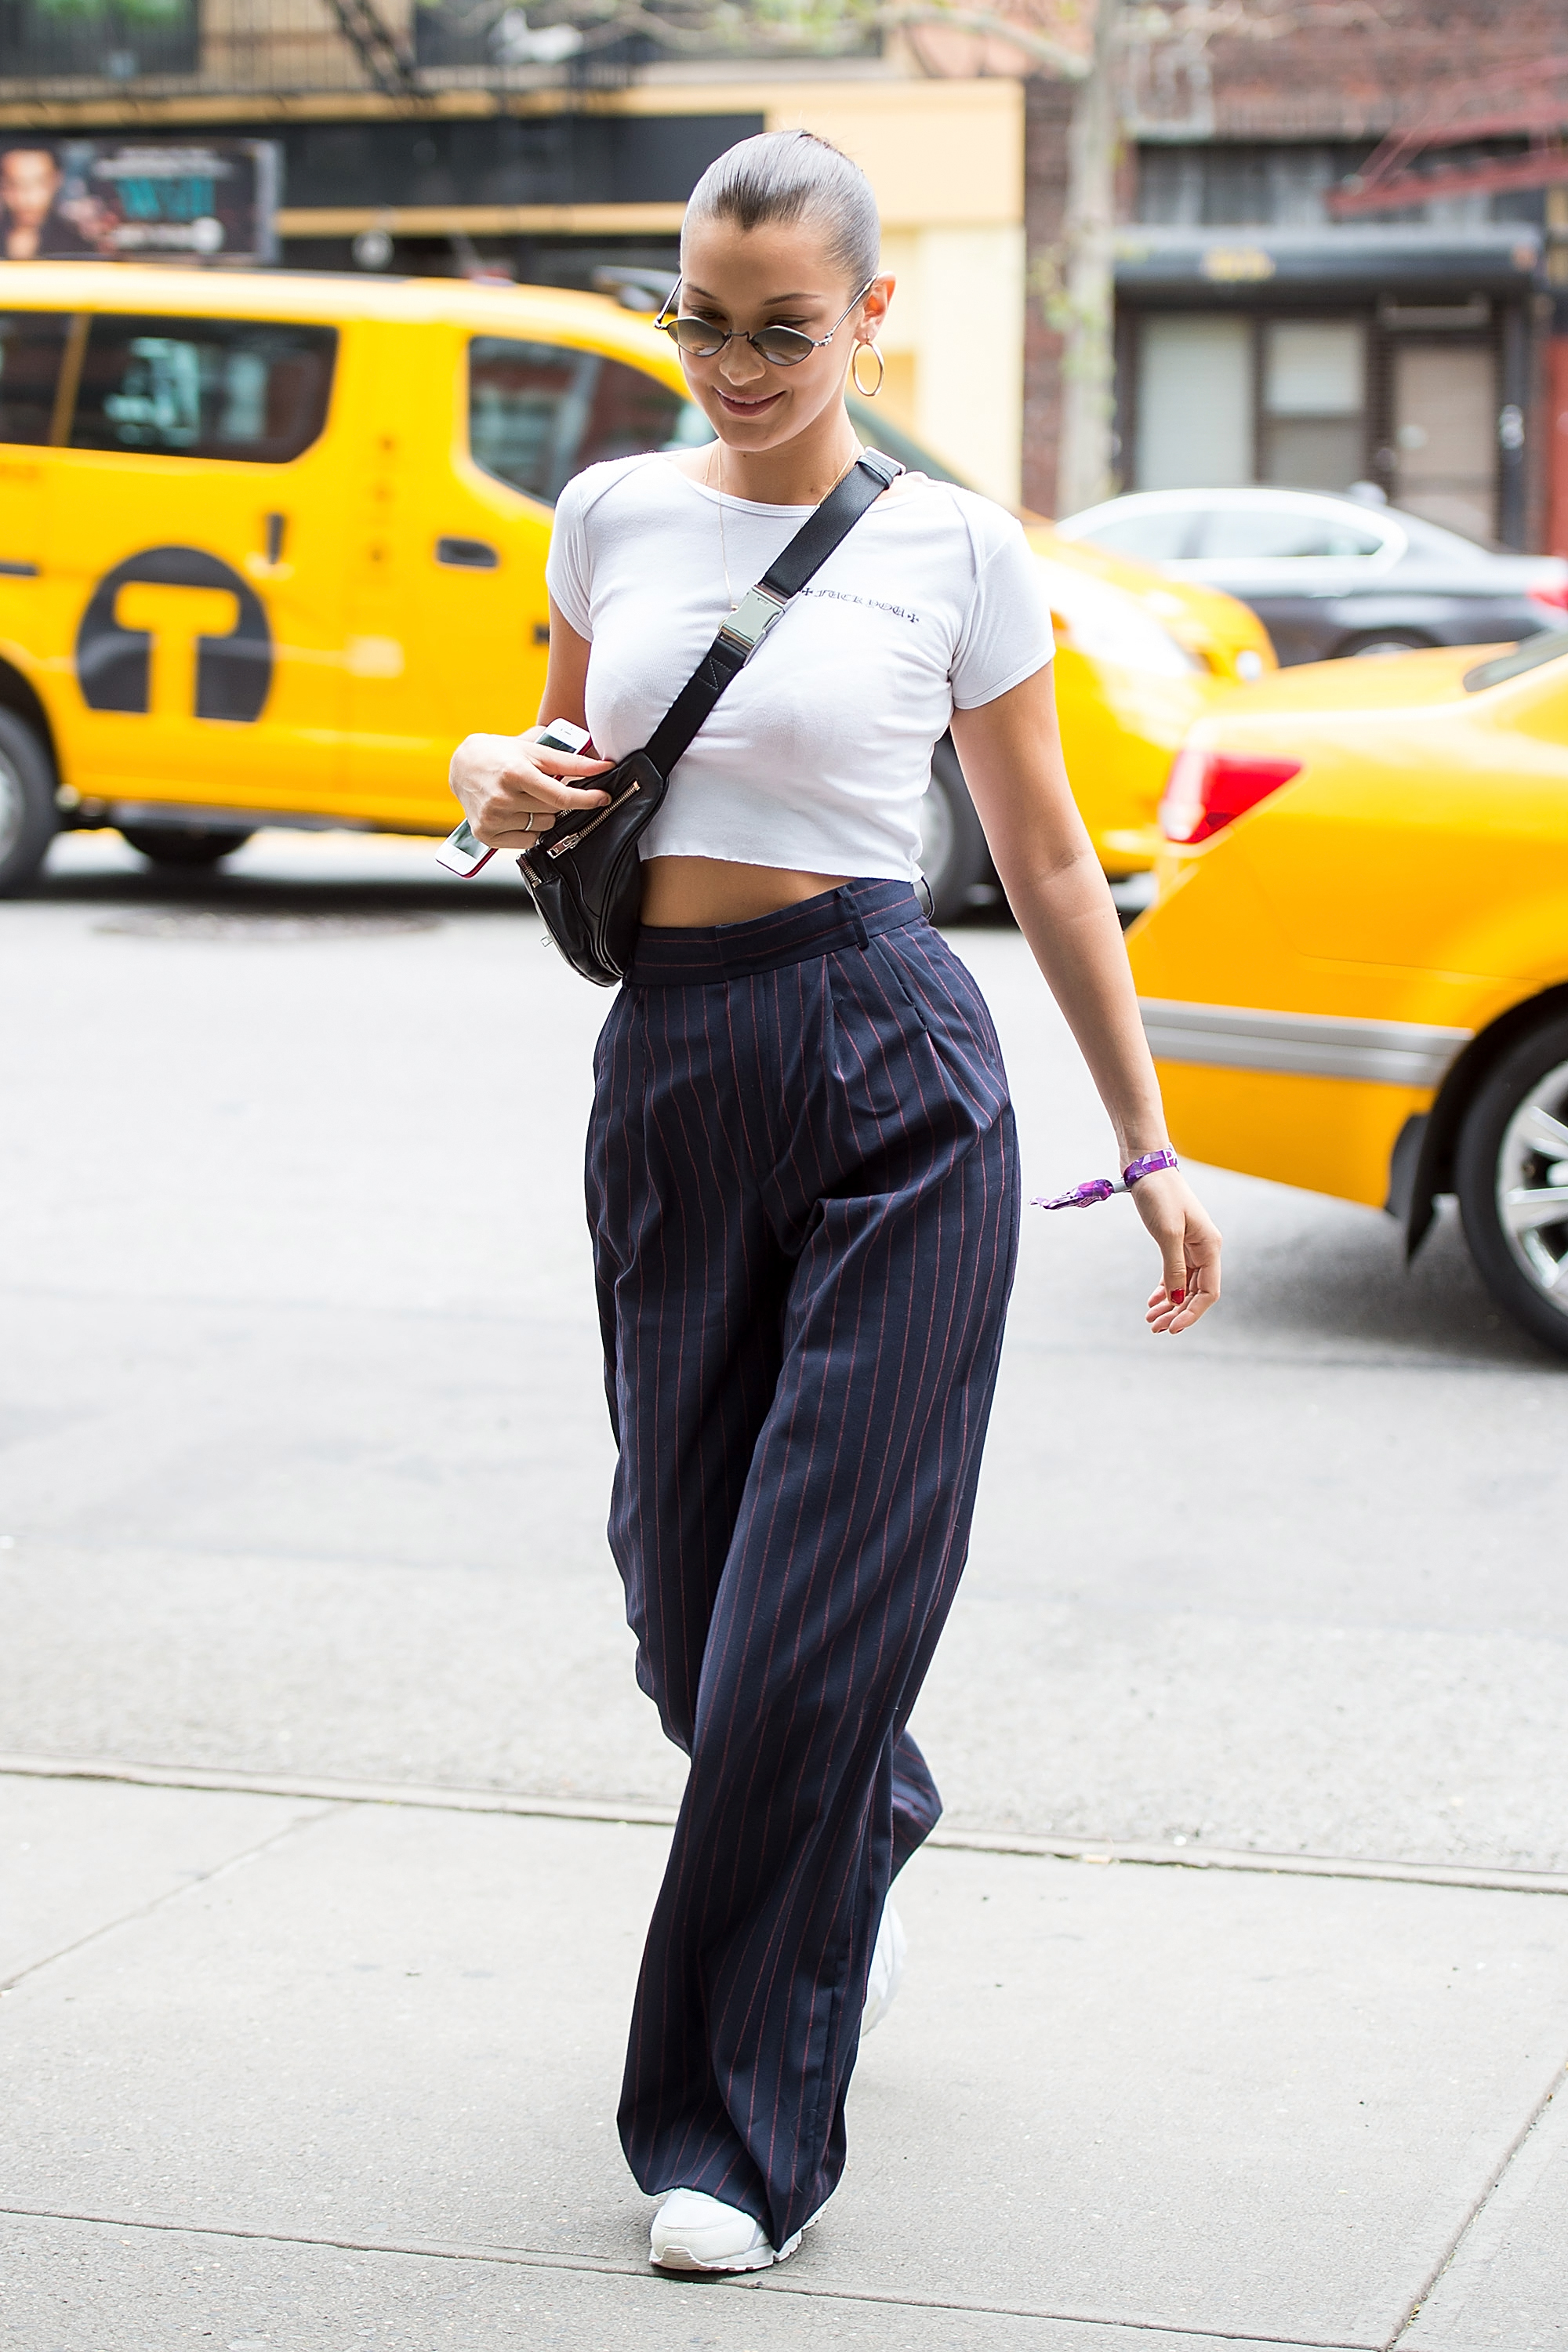 Kết hợp kiểu quần lưng cao kẻ sọc với crop top trắng đơn giản, sự gợi cảm của Bella Hadid được tôn lên trọn vẹn.